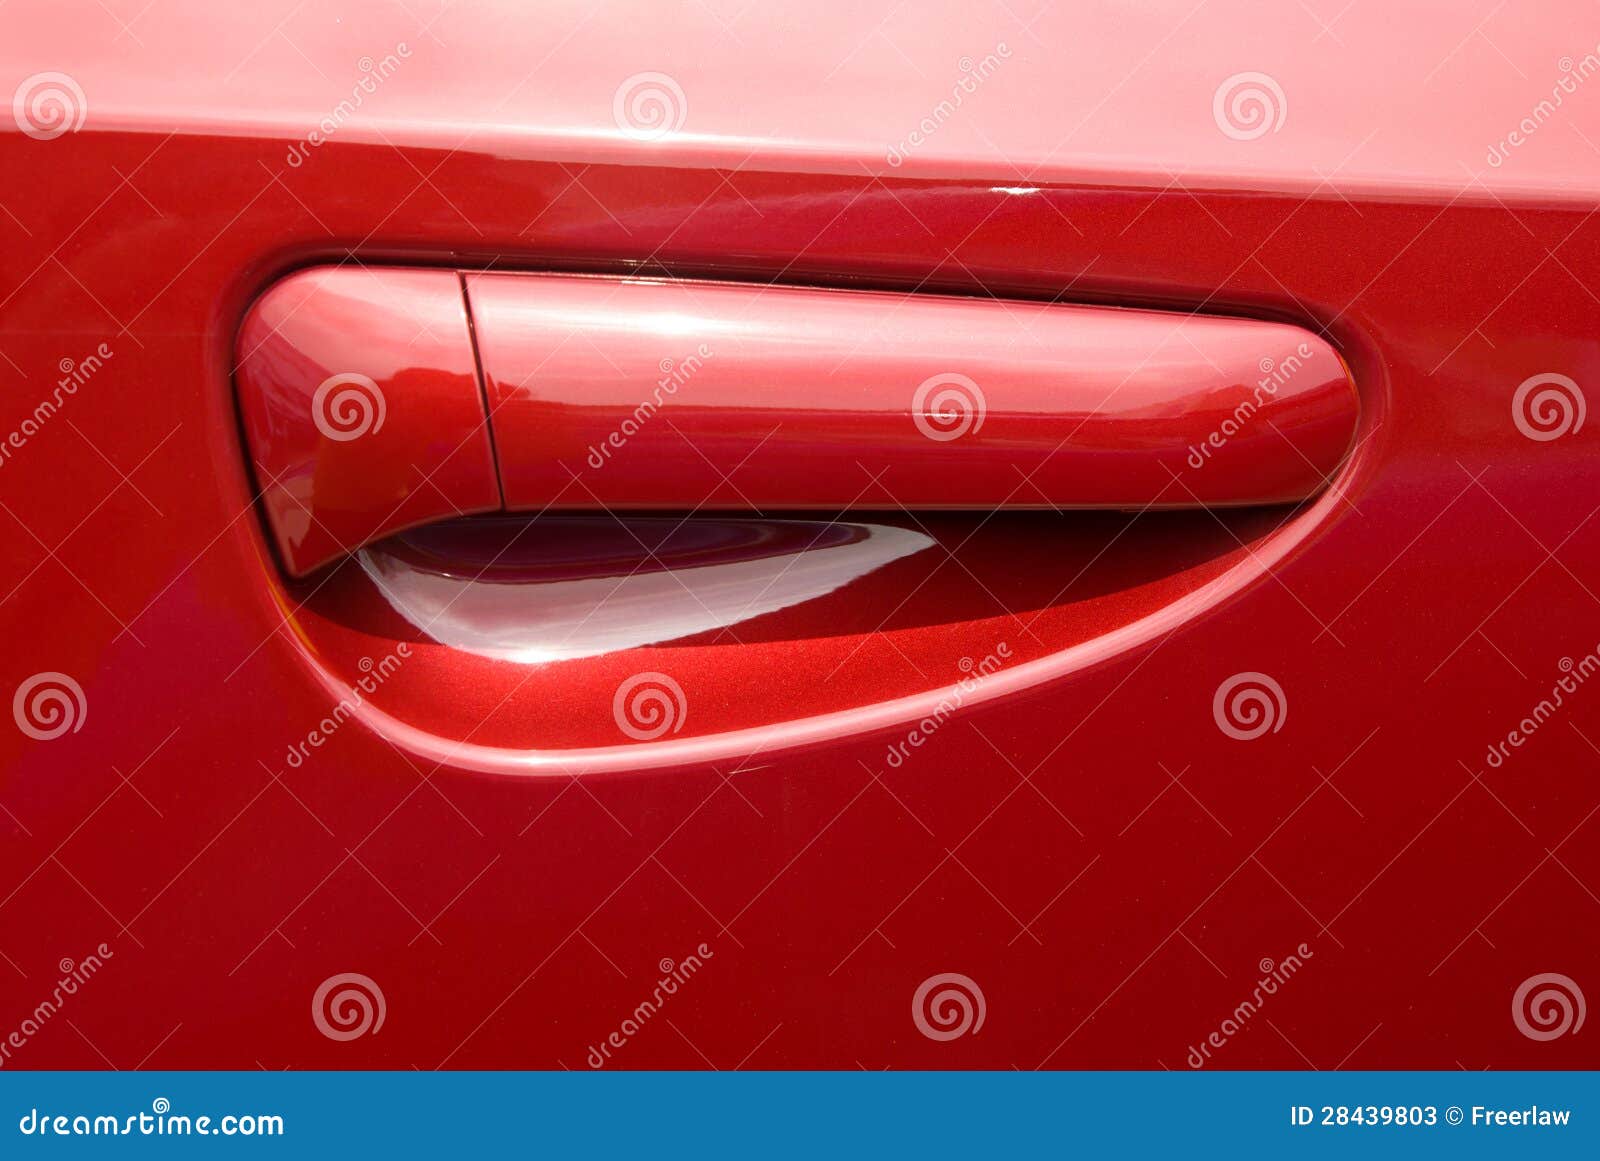 Türgriff am roten auto